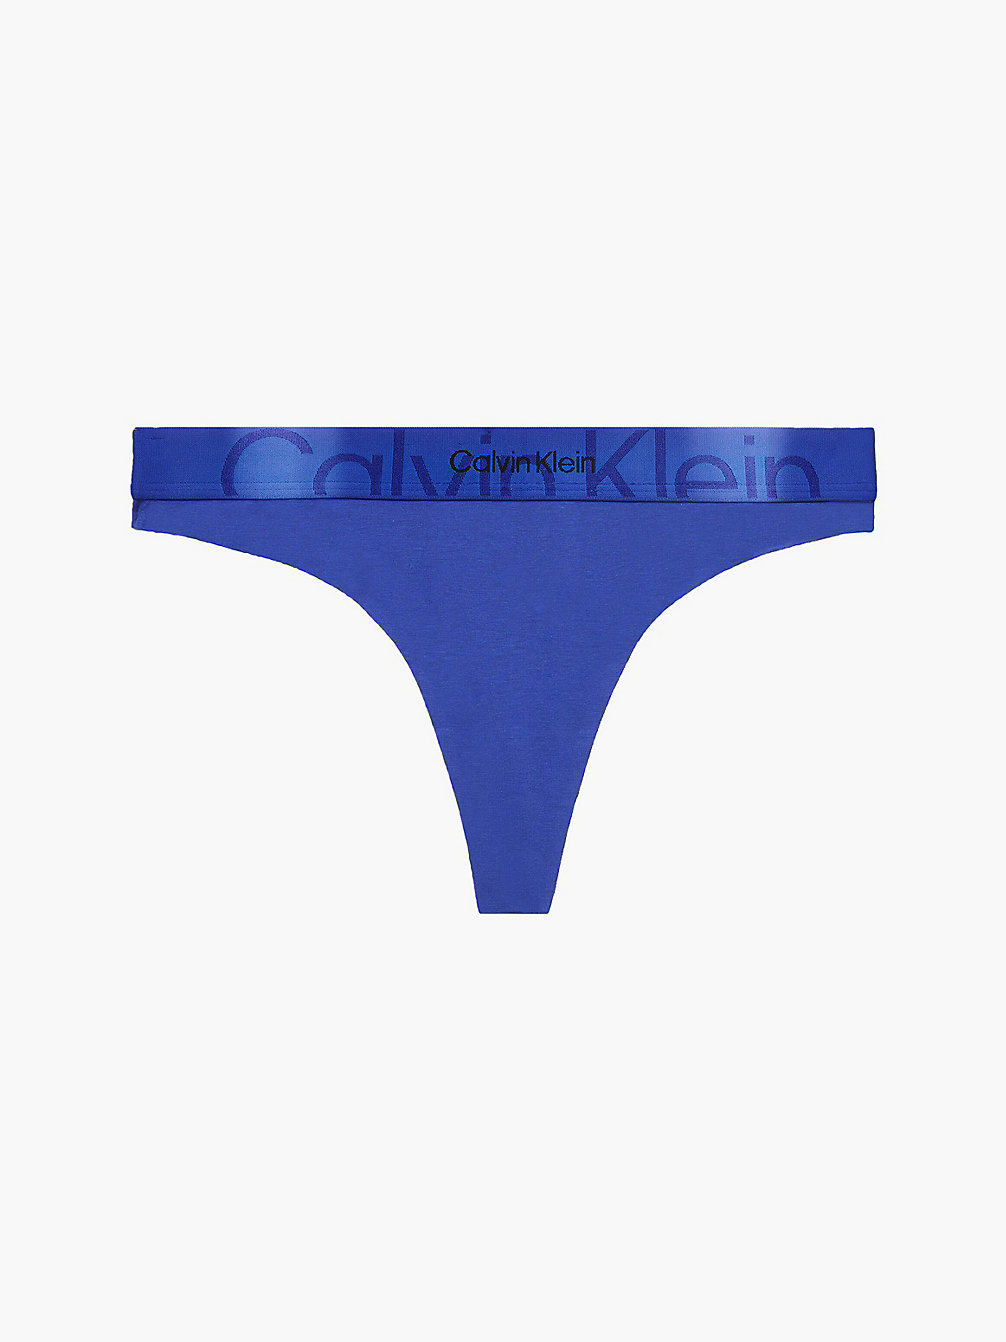 CLEMATIS > String – Embossed Icon > undefined Damen - Calvin Klein